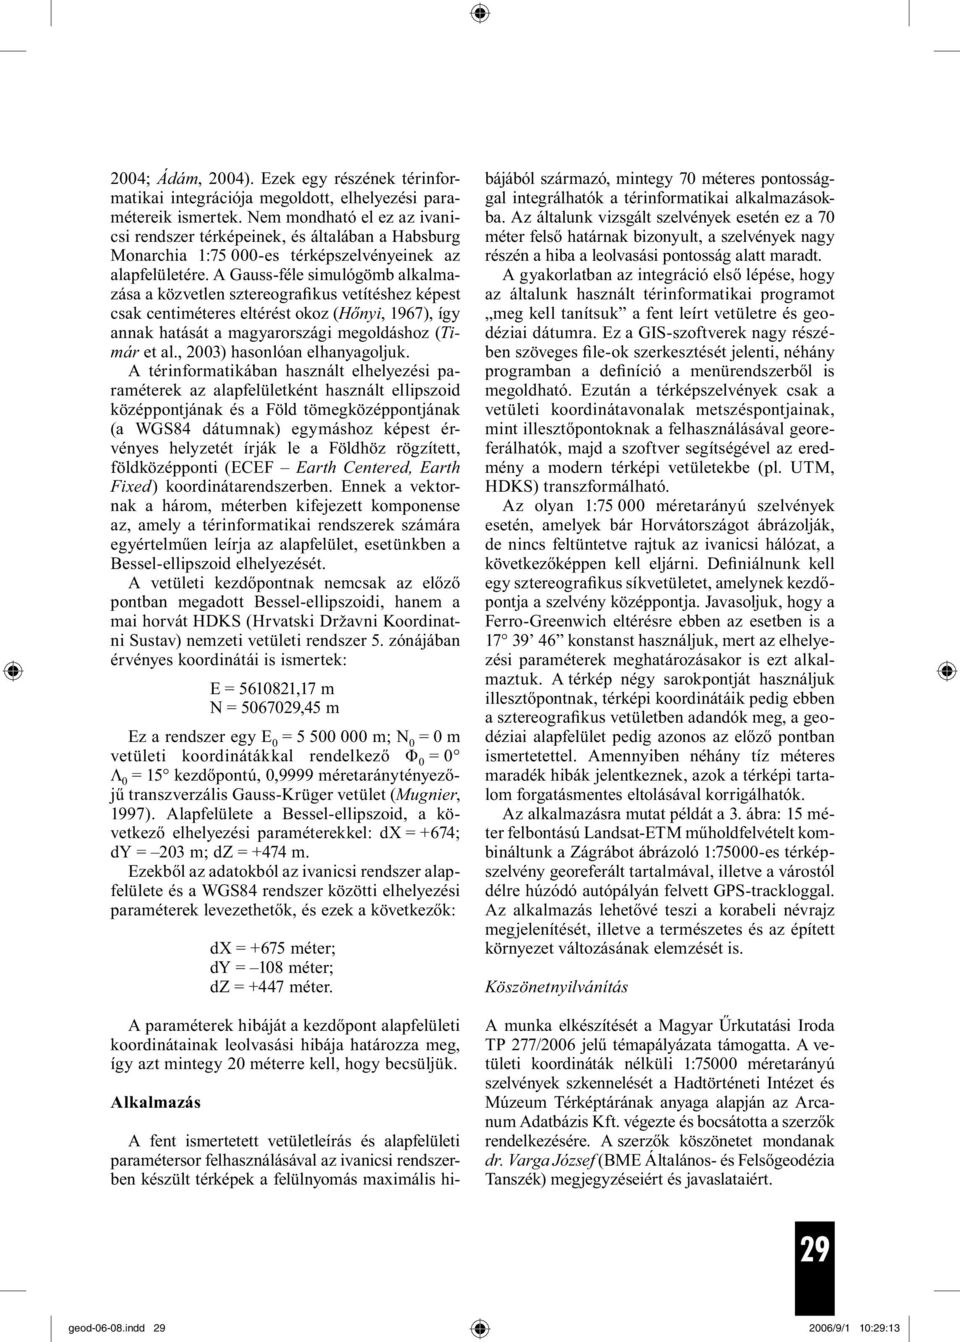 A Gauss-féle simulógömb alkalmazása a közvetlen sztereografikus vetítéshez képest csak centiméteres eltérést okoz (Hőnyi, 1967), így annak hatását a magyarországi megoldáshoz (Timár et al.